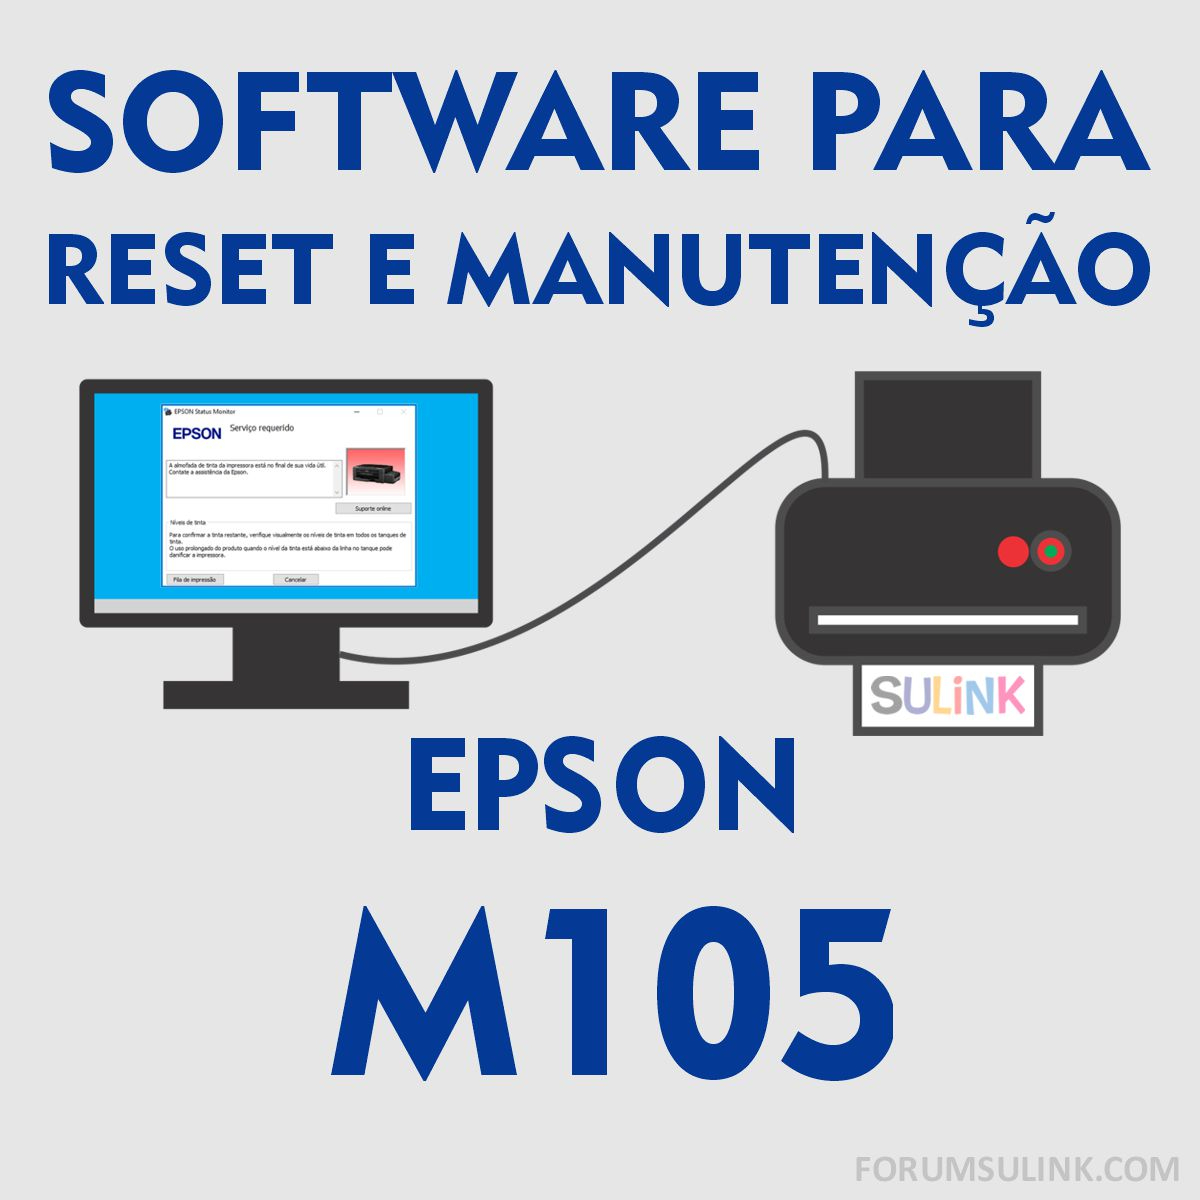 Epson M105 | Software para Reset das Almofadas e Manutenção